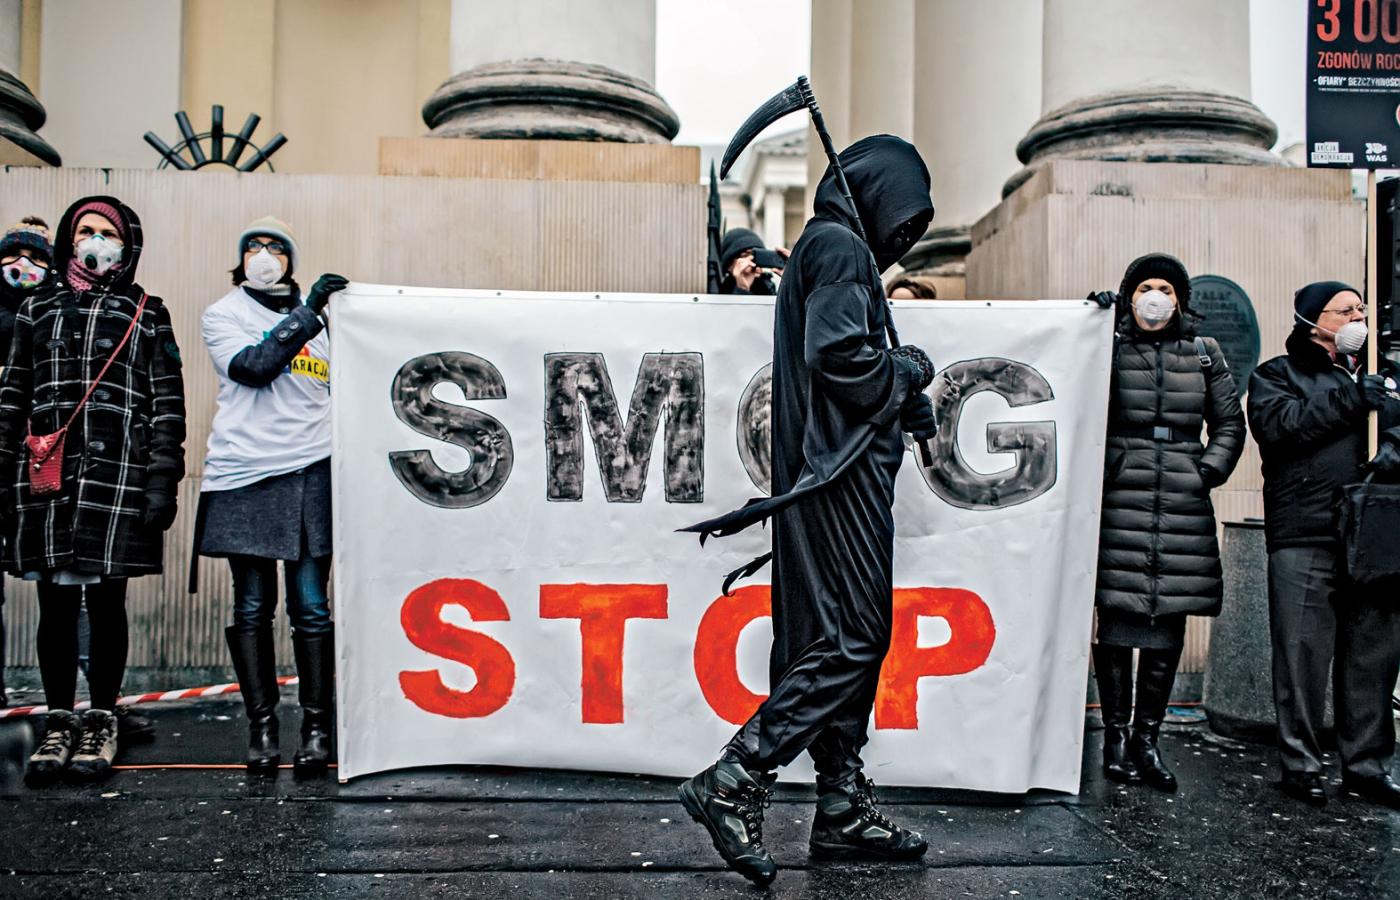 Jakość powietrza w Polsce należy do najgorszych w Europie, oddychanie smogiem przyczyniło się w tym roku do ok. 43 tys. zgonów.